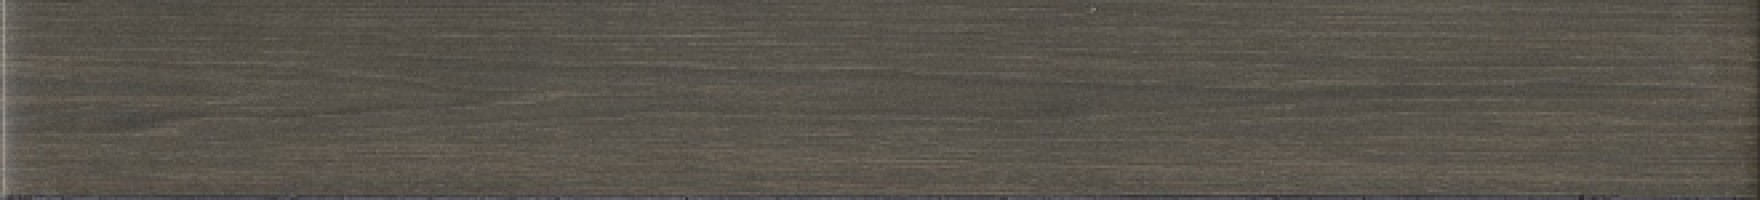 Бордюр Kerama Marazzi Кассетоне коричневый матовый 30.2x3.5 VT/D368/SG9174